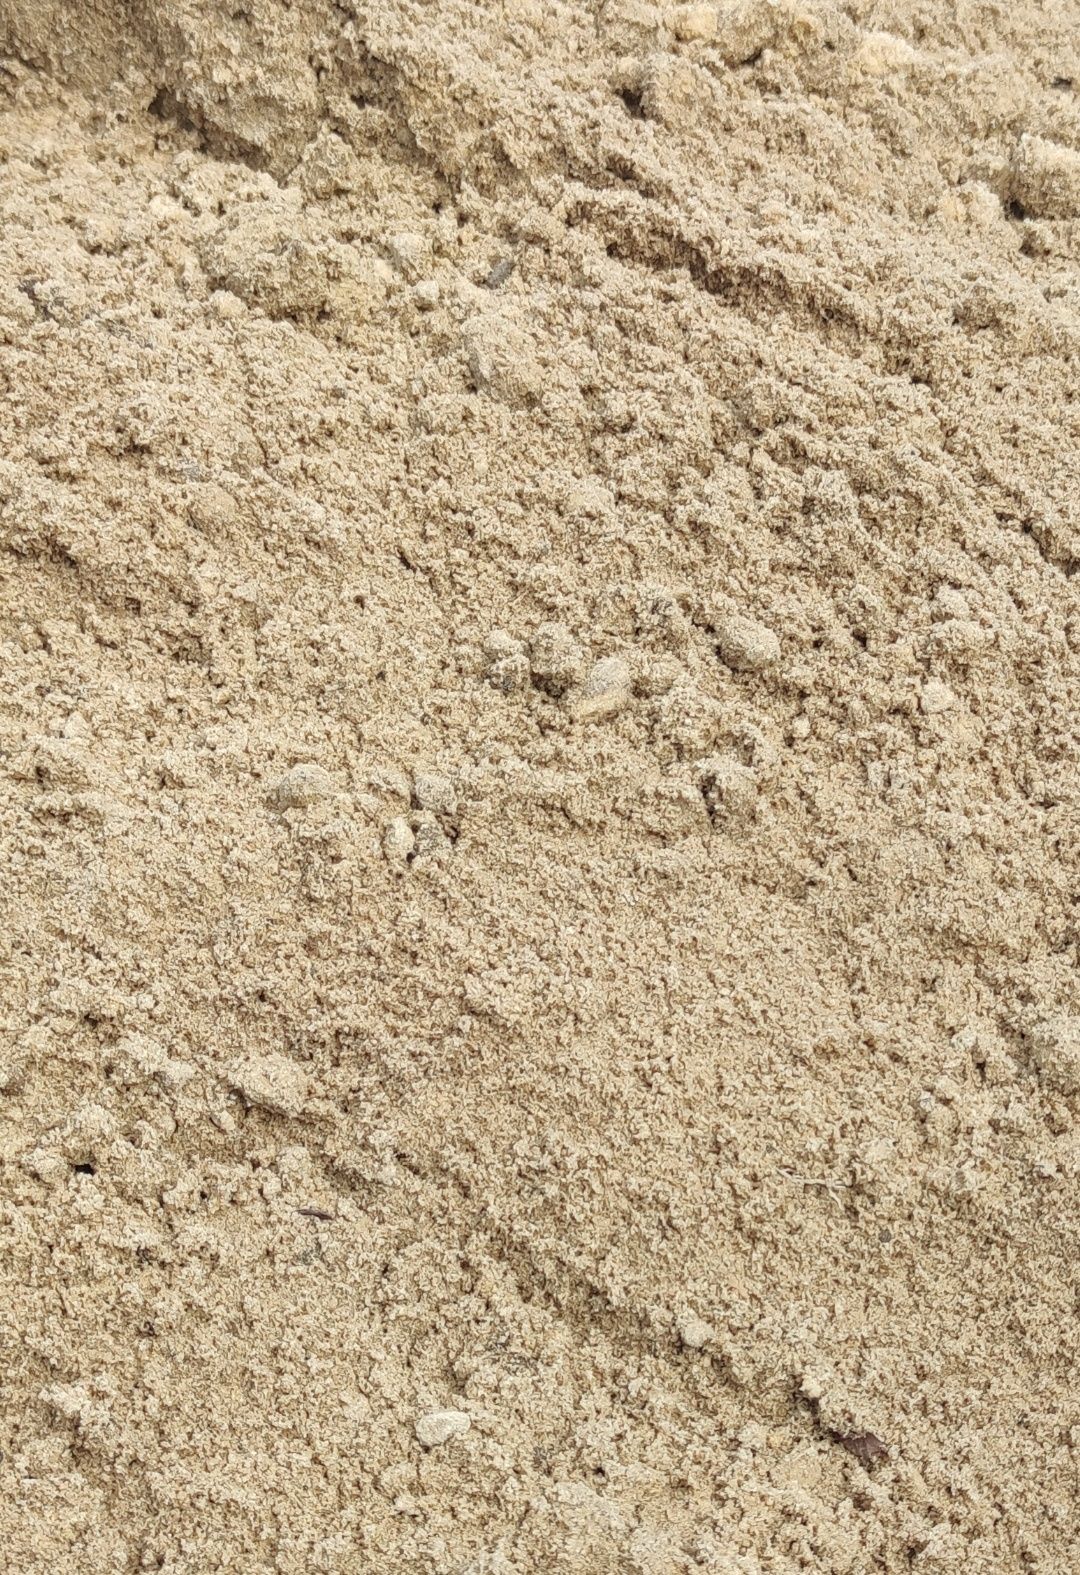 Kliniec szary grys szary biały czarny  tłuczeń wysiewka  piach